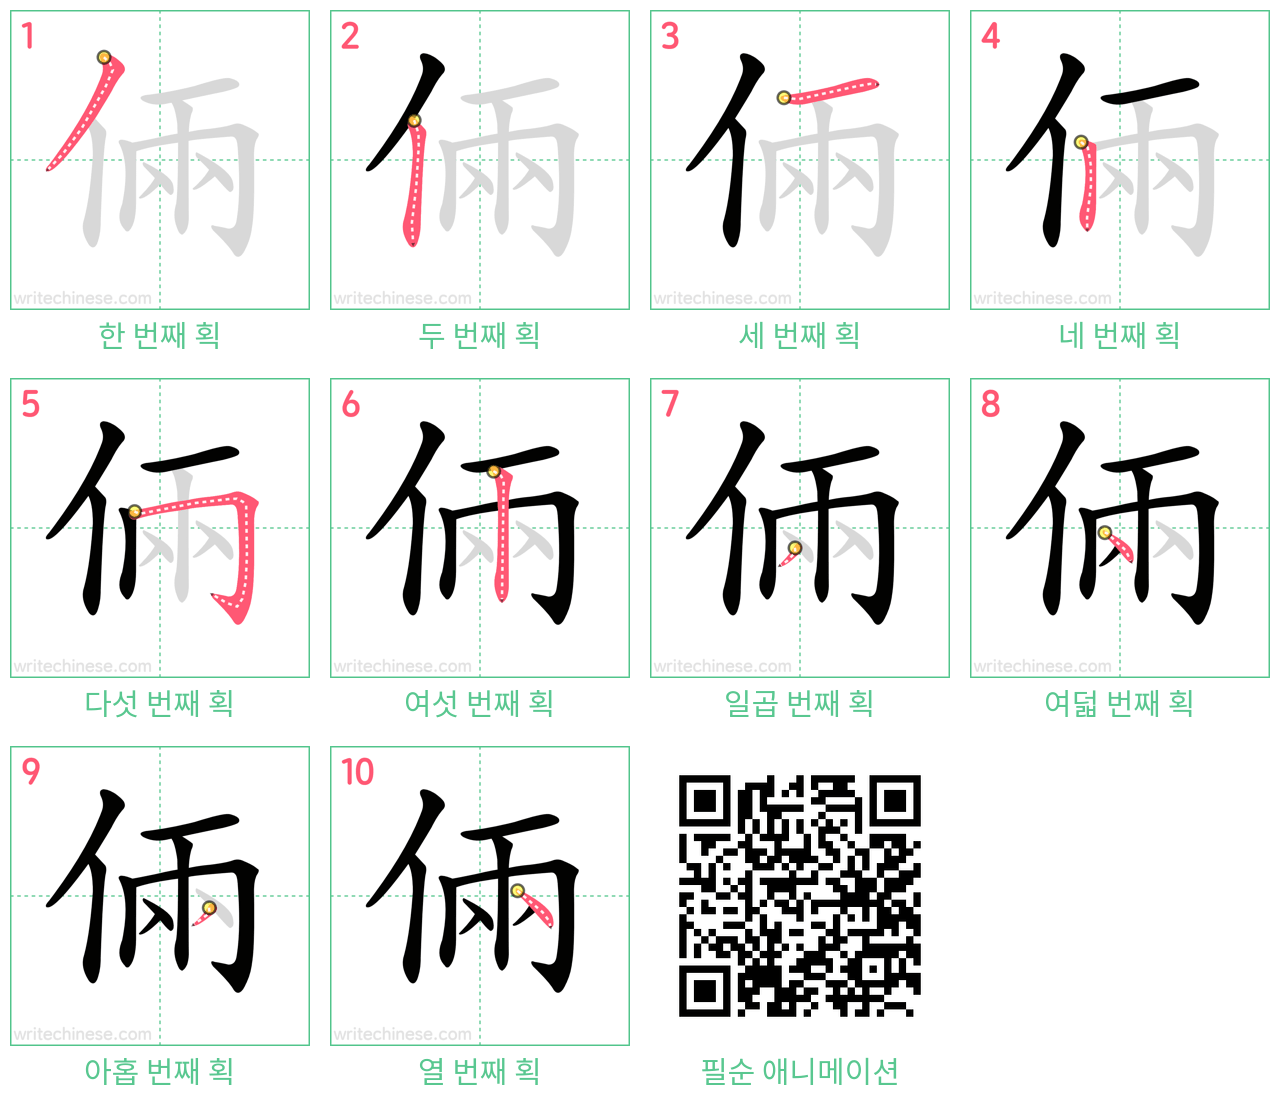 倆 step-by-step stroke order diagrams